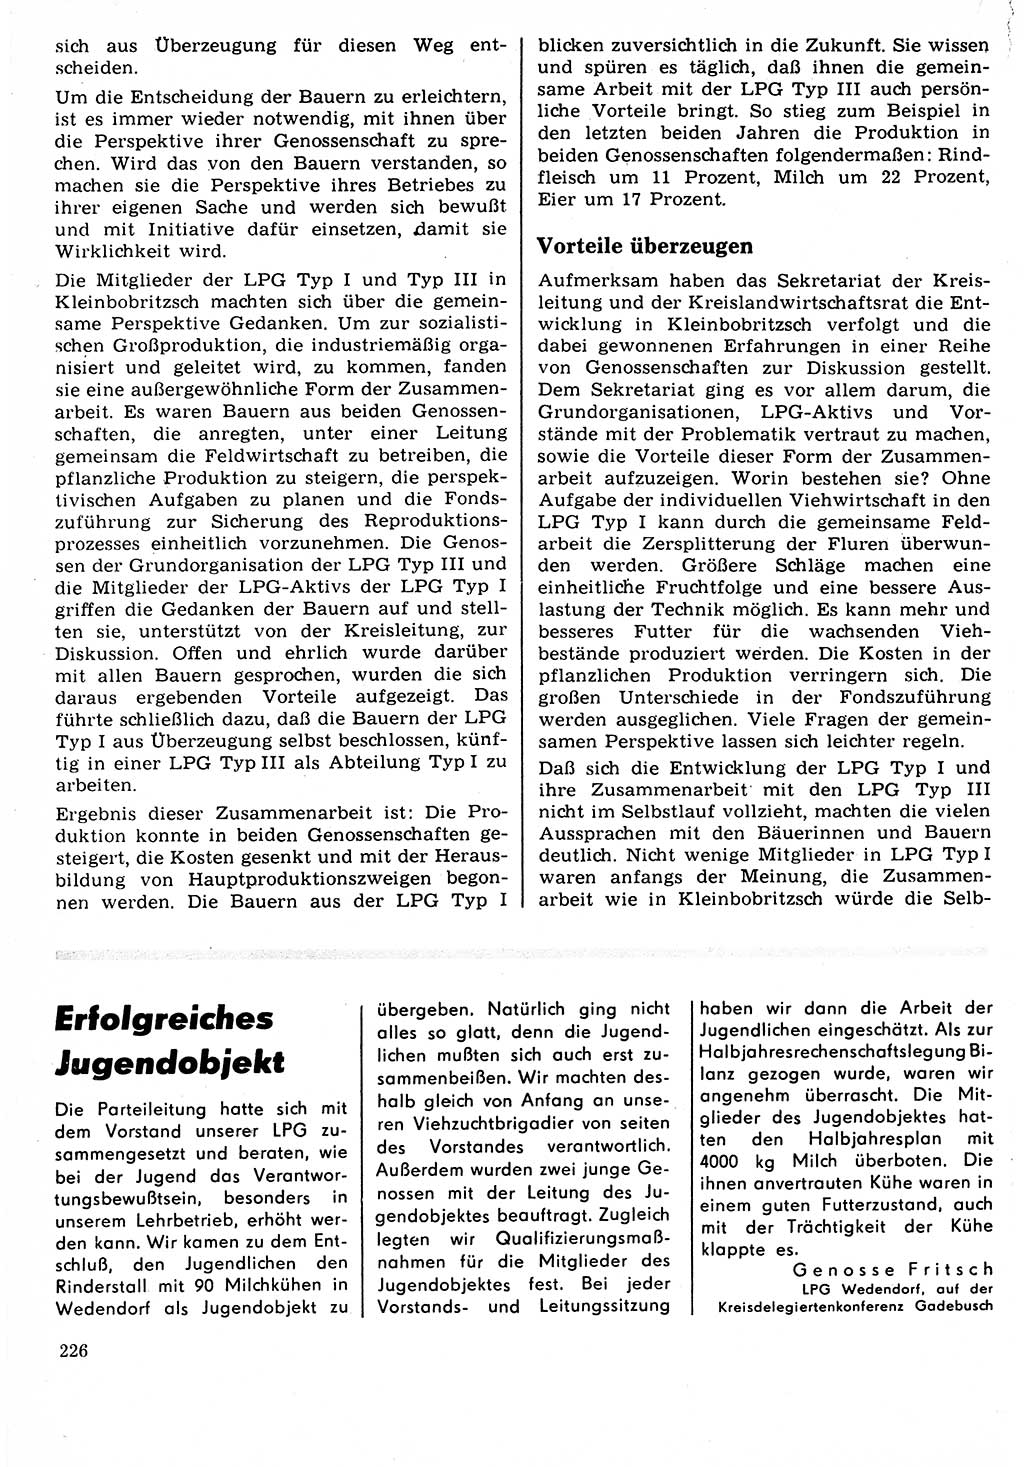 Neuer Weg (NW), Organ des Zentralkomitees (ZK) der SED (Sozialistische Einheitspartei Deutschlands) für Fragen des Parteilebens, 22. Jahrgang [Deutsche Demokratische Republik (DDR)] 1967, Seite 226 (NW ZK SED DDR 1967, S. 226)